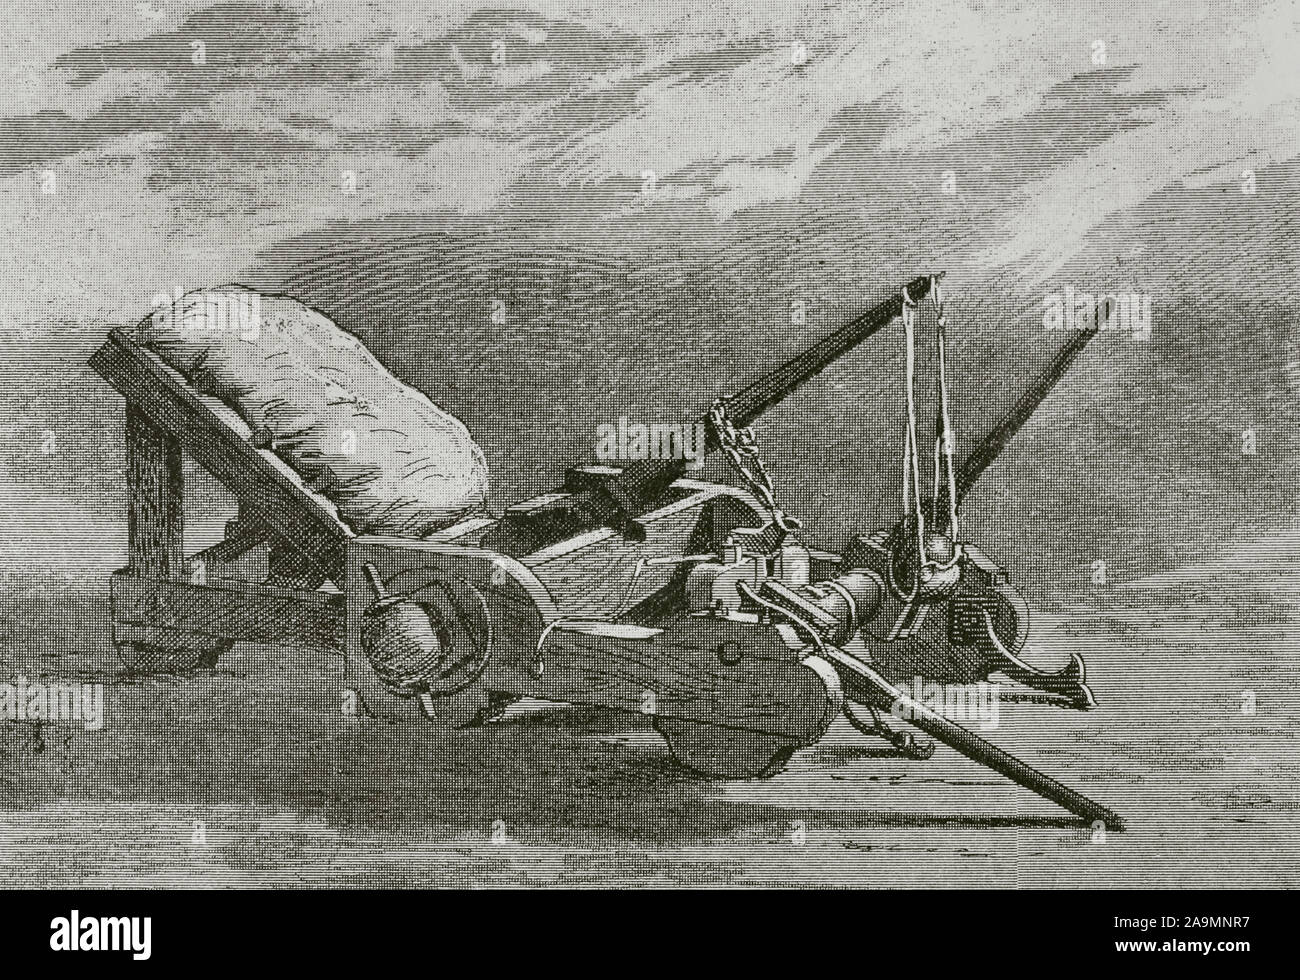 L'onagre. Il s'agit d'une torsion romaine impériale powered d'engins de siège. La gravure. Museo Militar, 1883. Banque D'Images